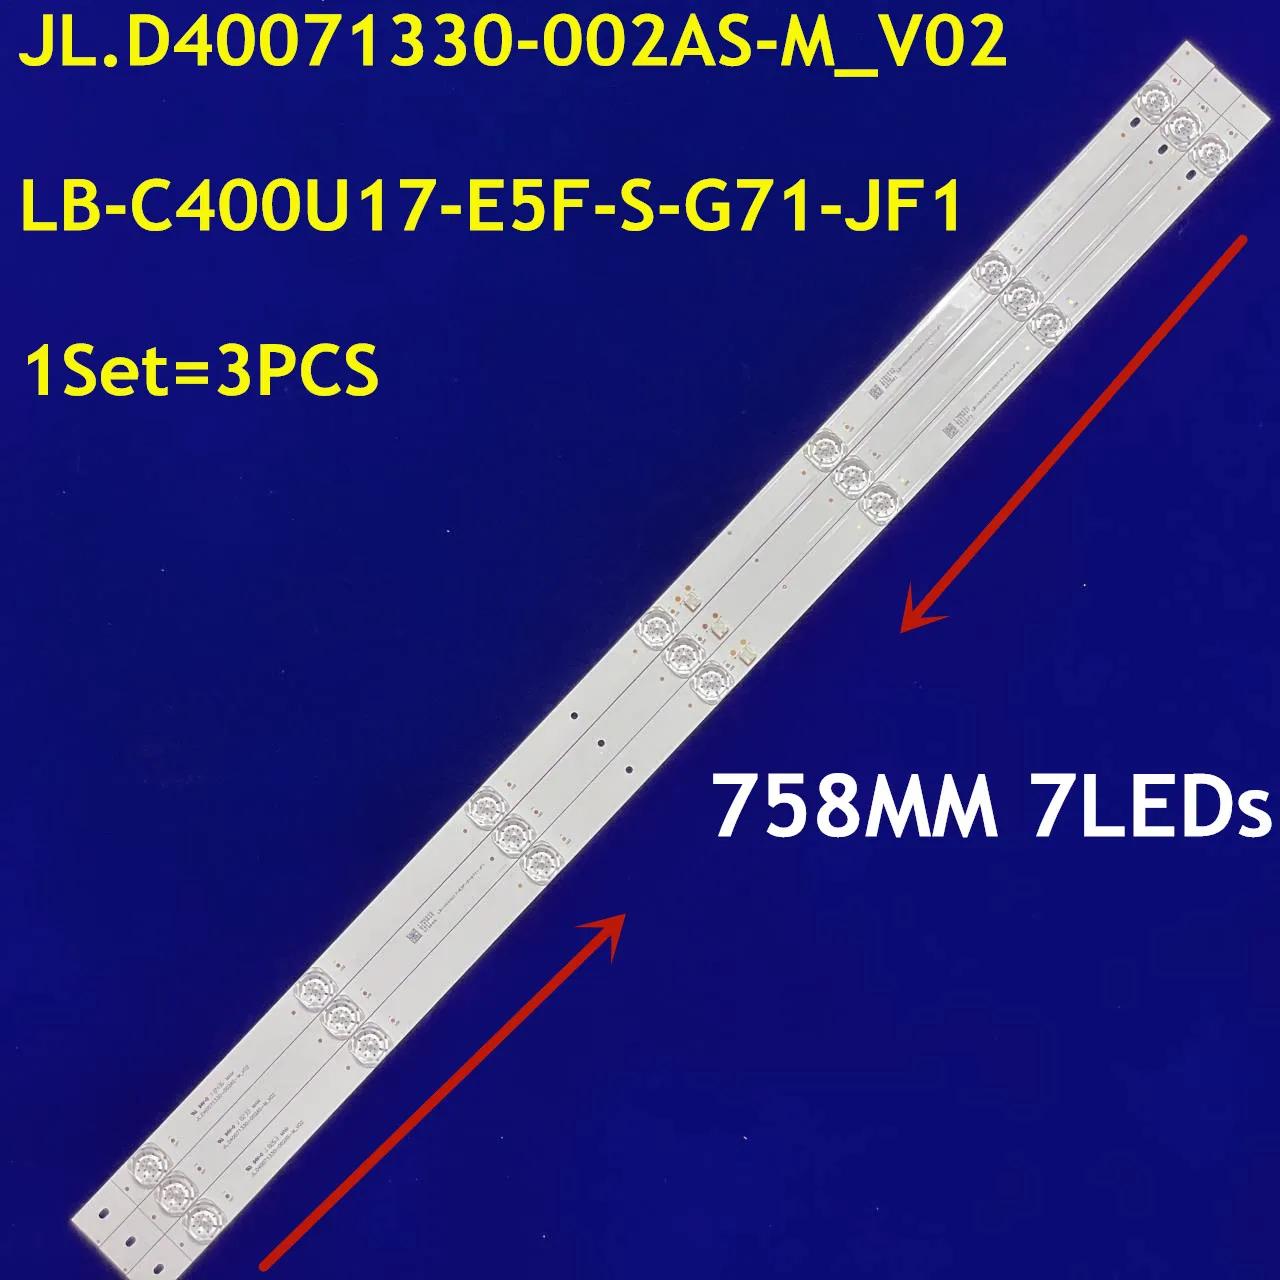 LED Ʈ Ʈ, PTV40E60SN, PTV40E60, PTV40G50, Ptv40g50sns, JL.D40071330-002AS-M_V02 LB-C400U17-E5F-S-G71-JF1, 20 Ʈ,